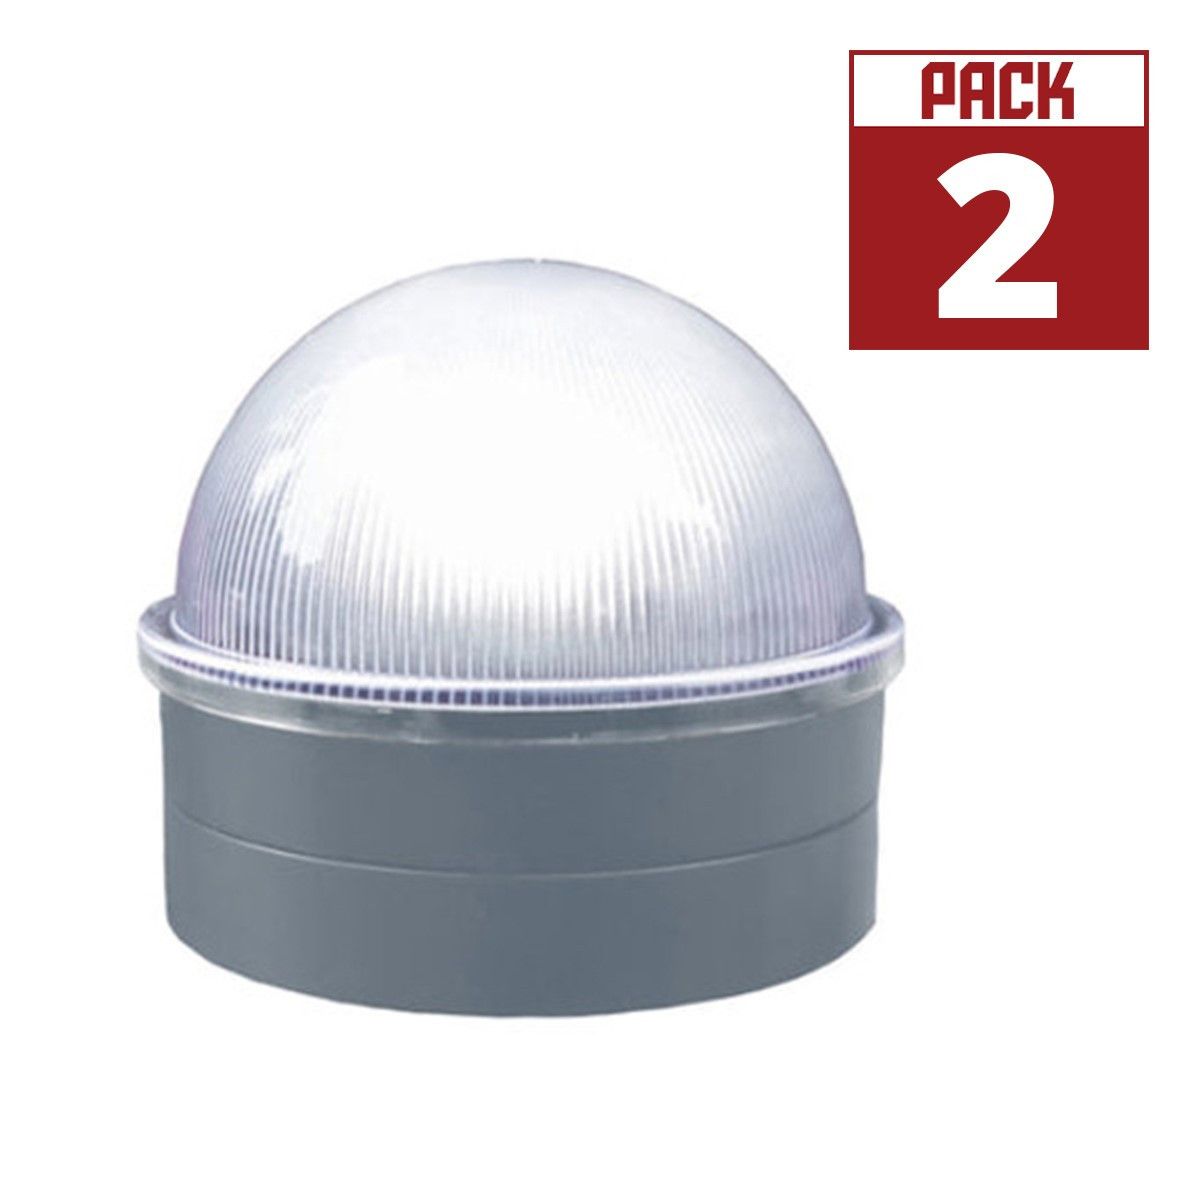 LED Solar Post Cap 5 Lumens 4500K (Pack Of 2)